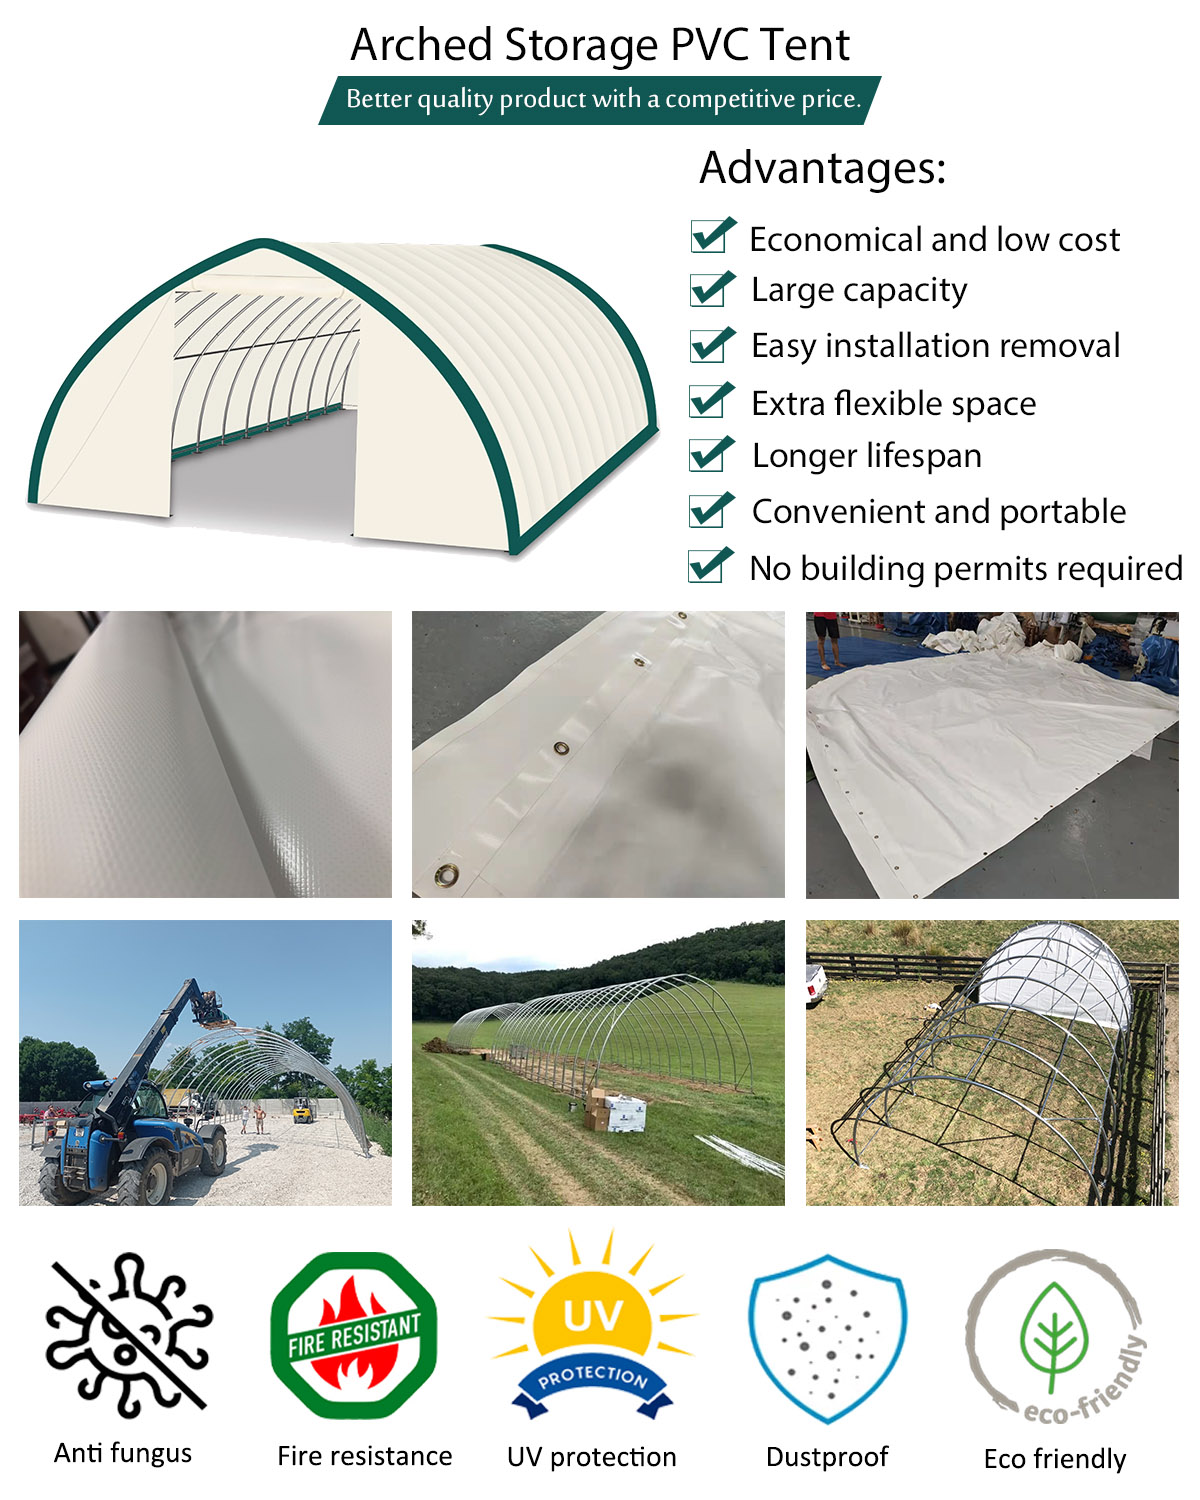 Arched Storage PVC Tent